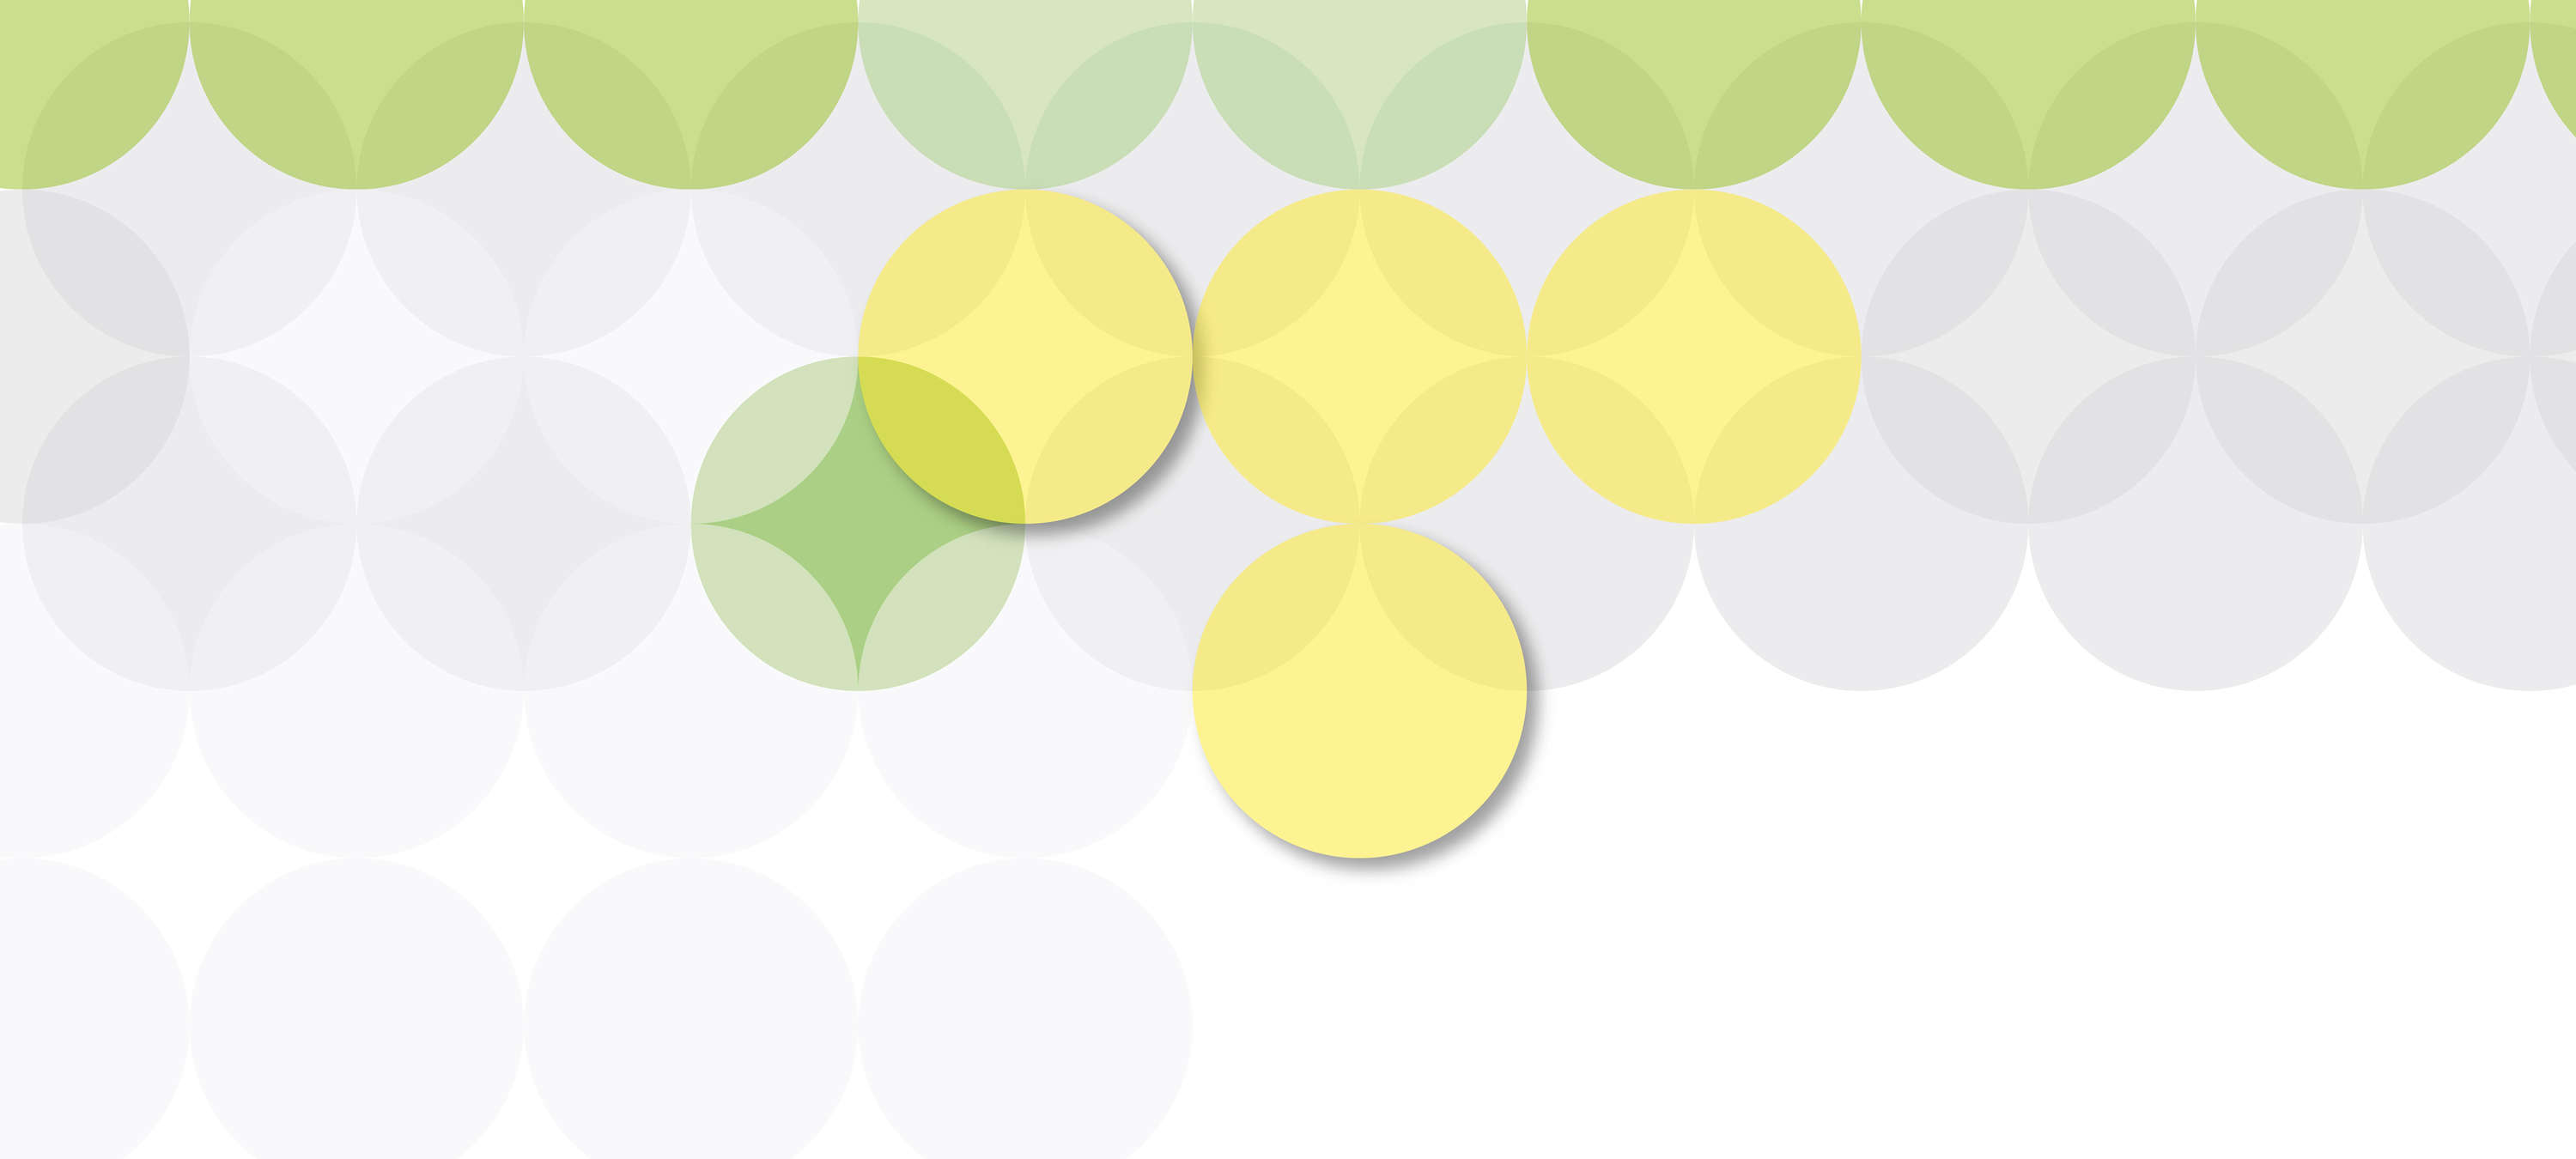             Papel pintado con diseño de círculos y patrones gráficos - Amarillo, Verde, Blanco
        